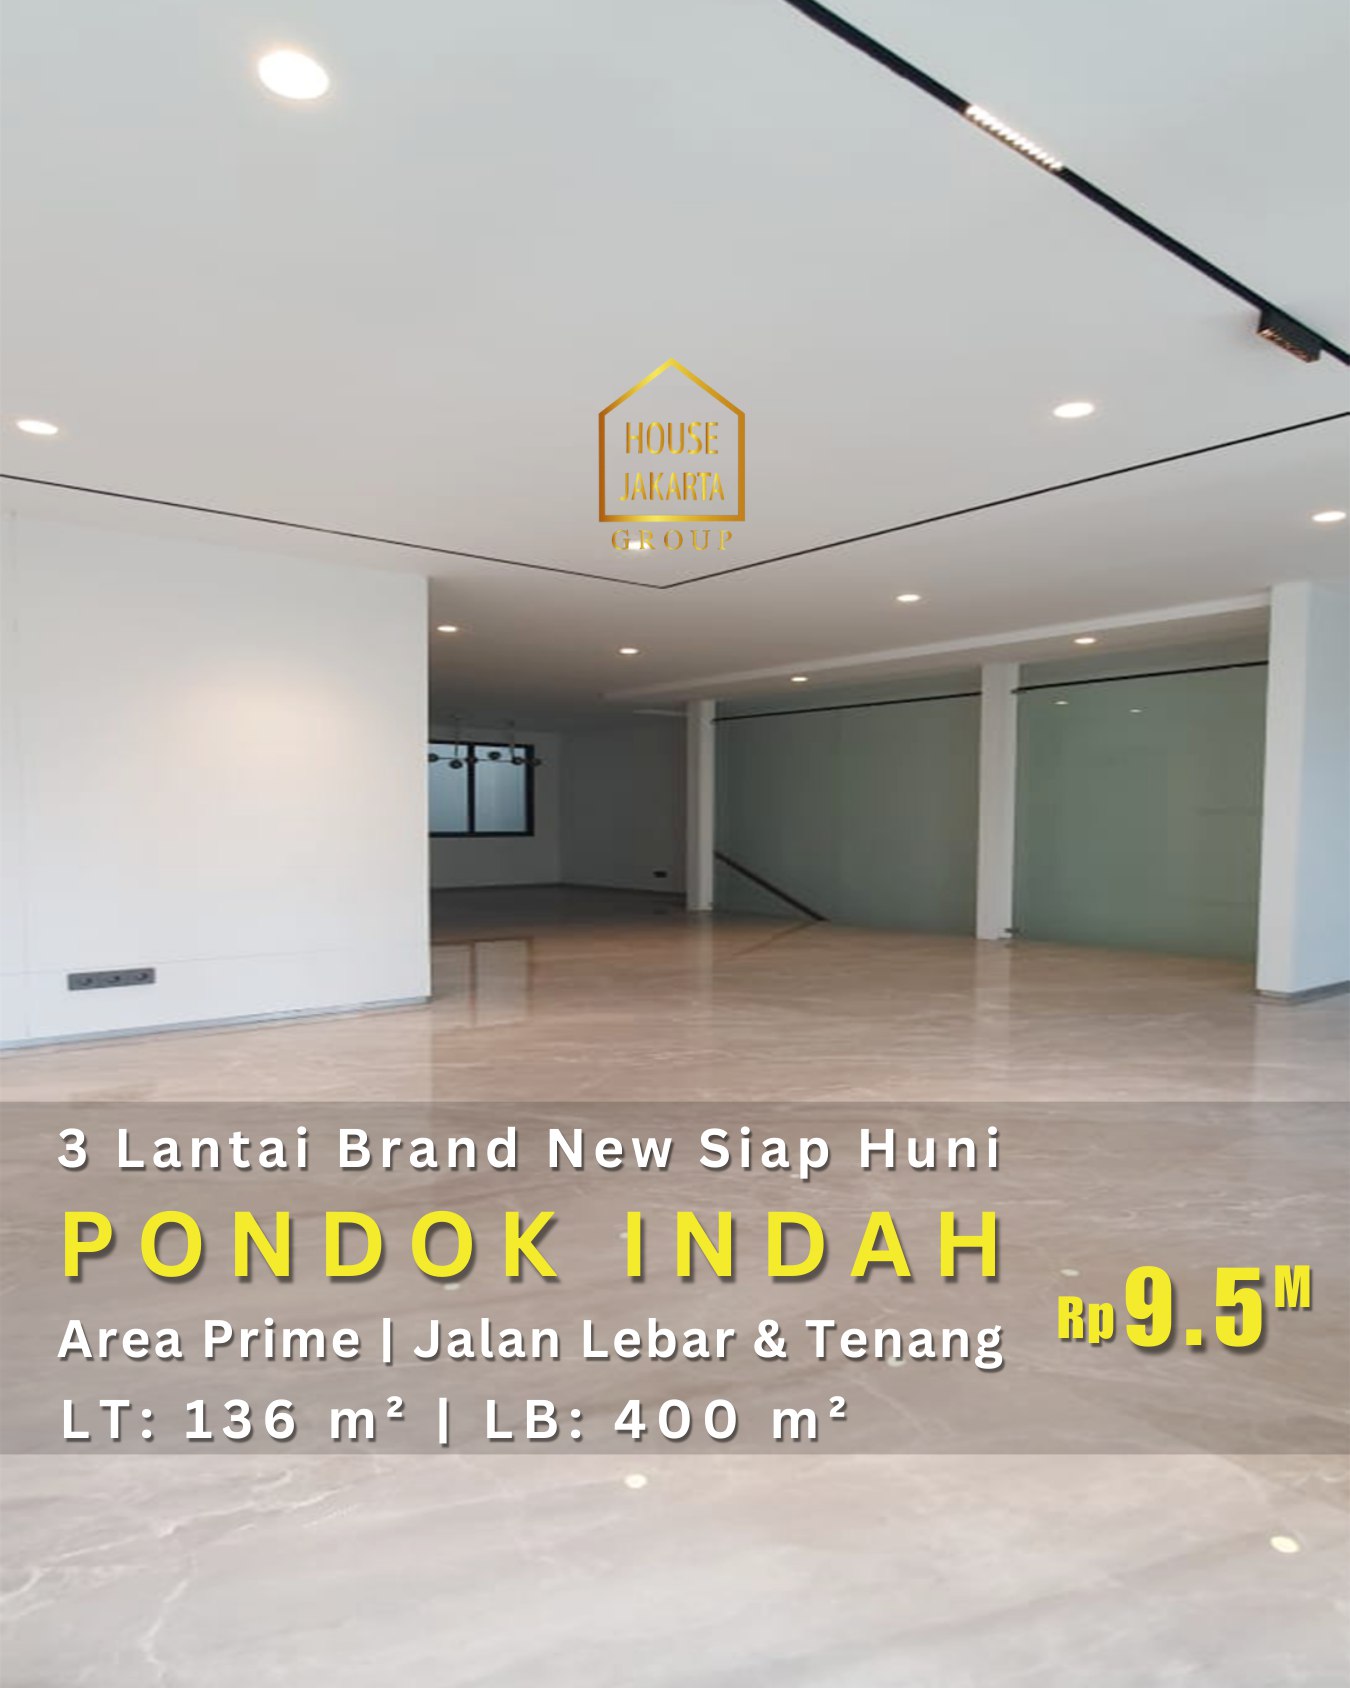  Rumah Brand New Pondok Indah Siap Huni 3 Lantai, Area Prime, Jalan Lebar & Tenang